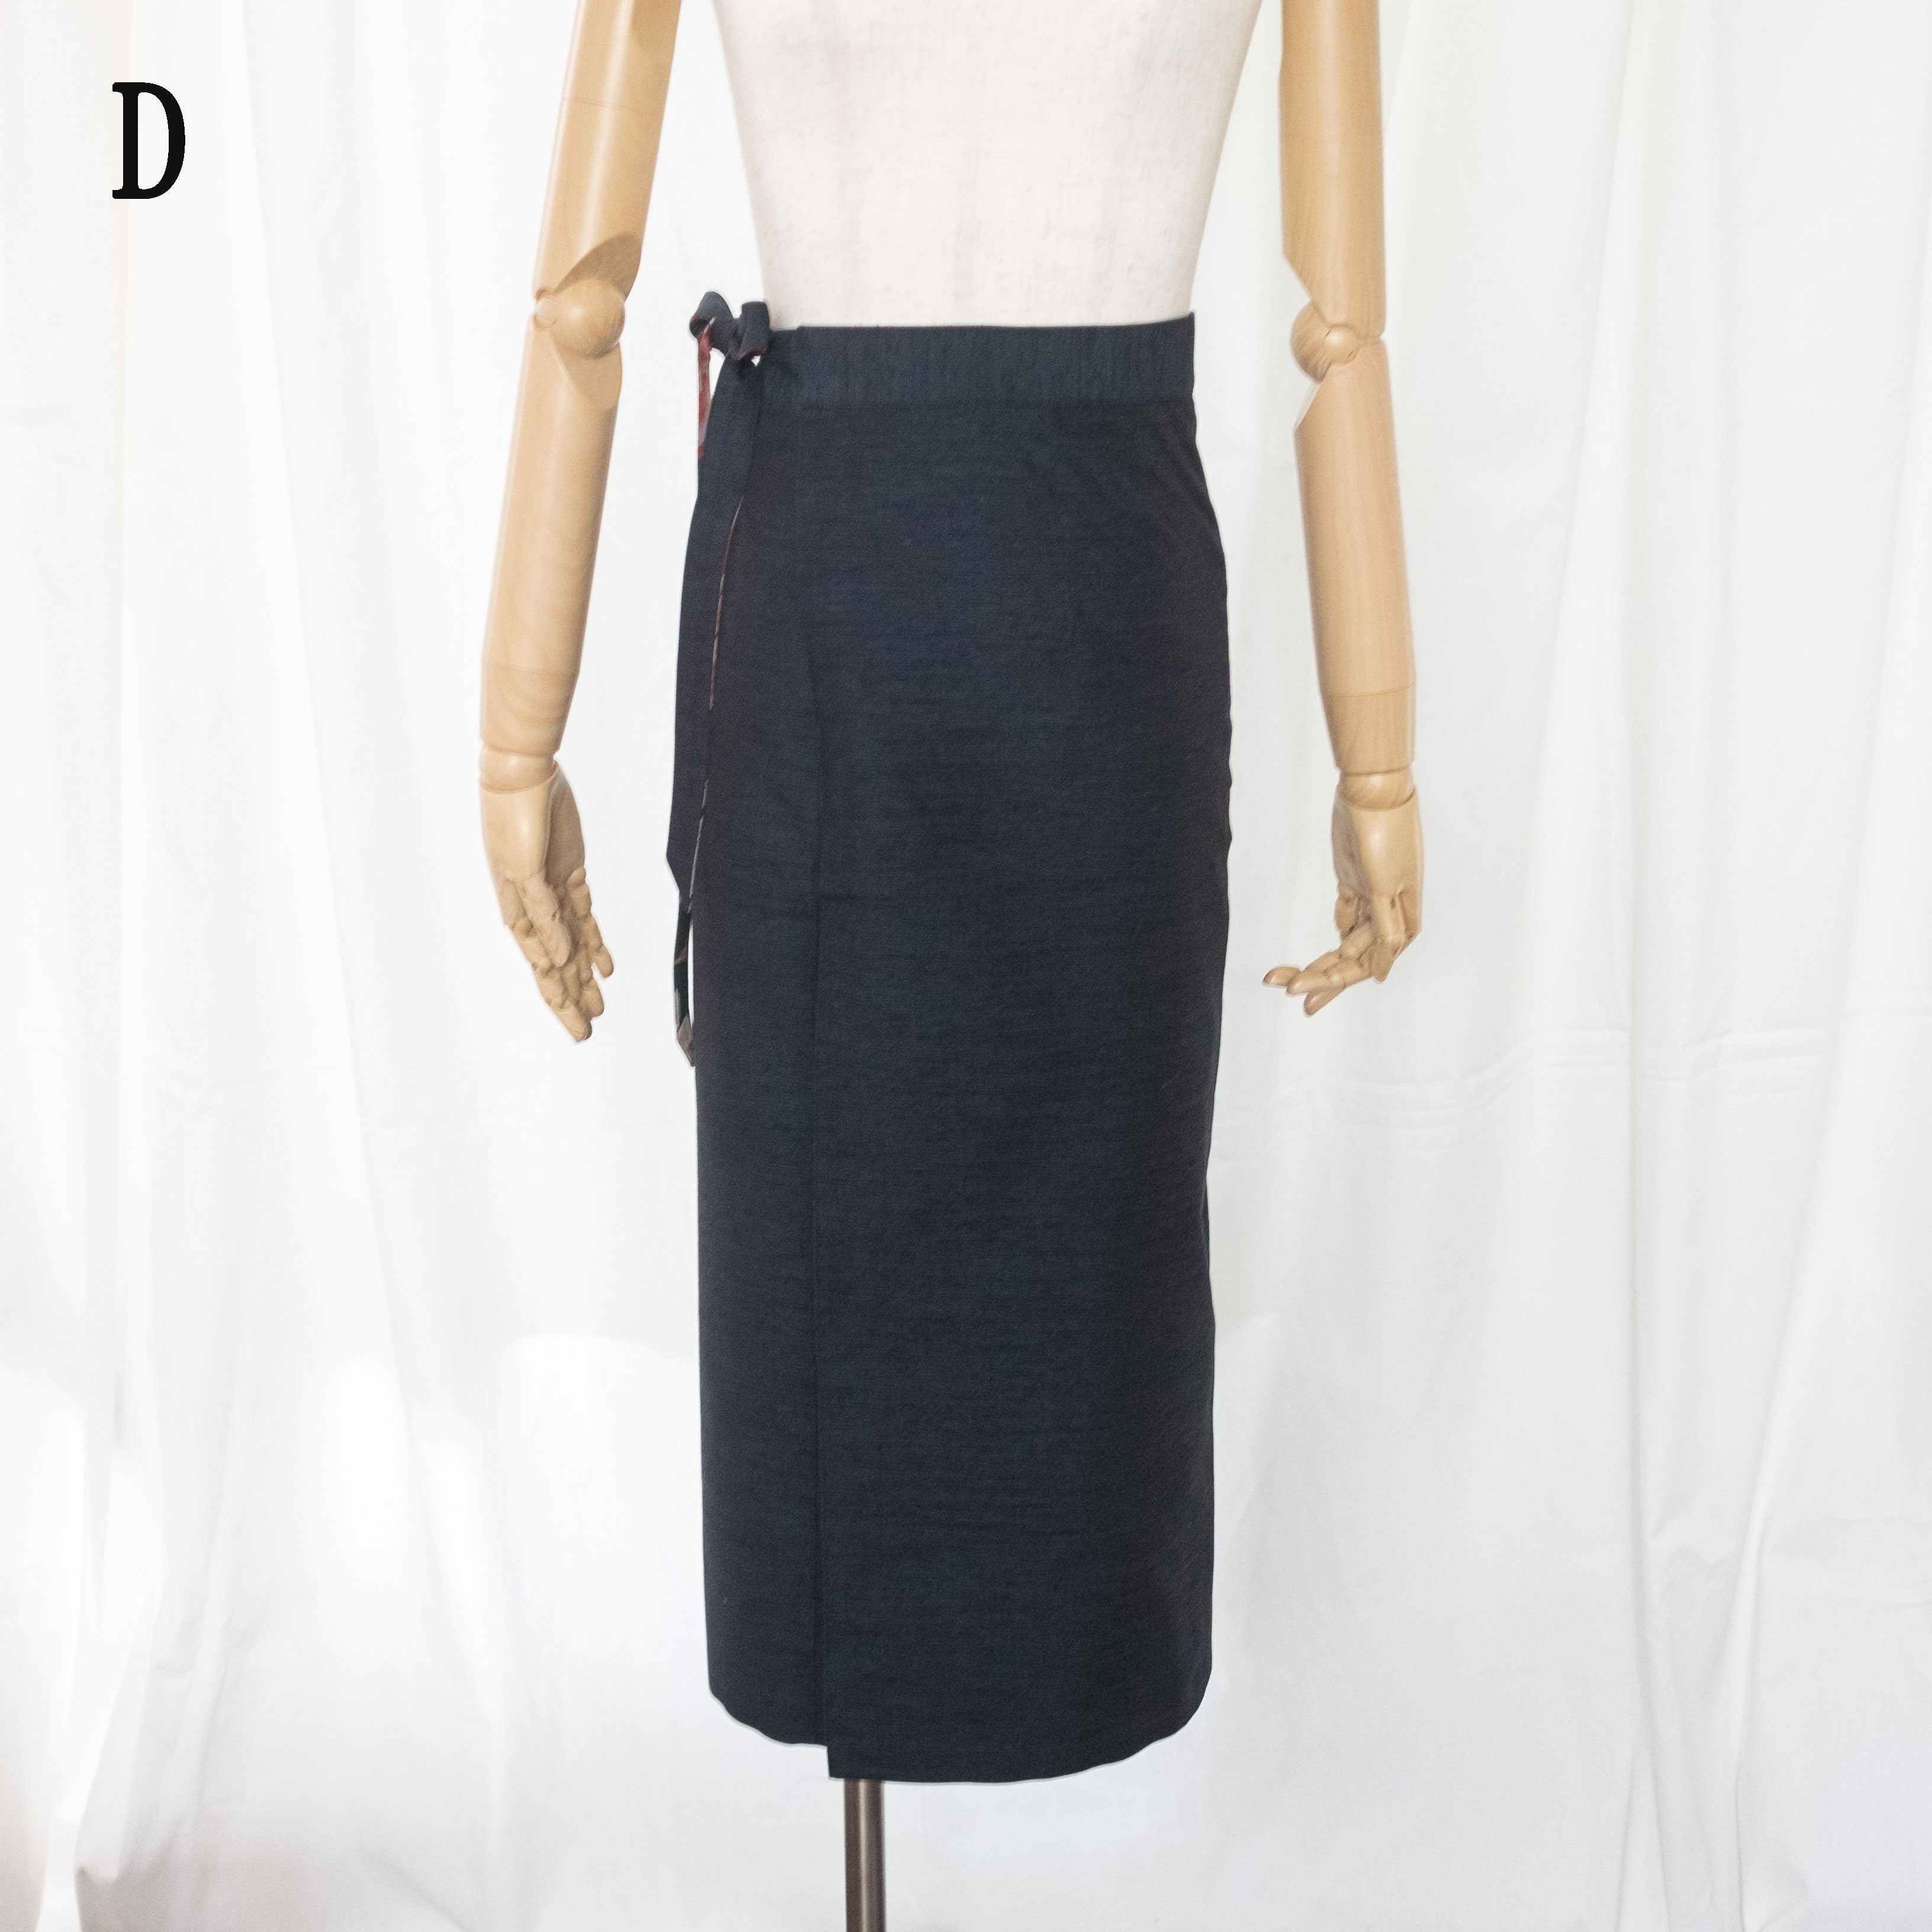 Reversible Skirt Long Straight - Fiori Verde